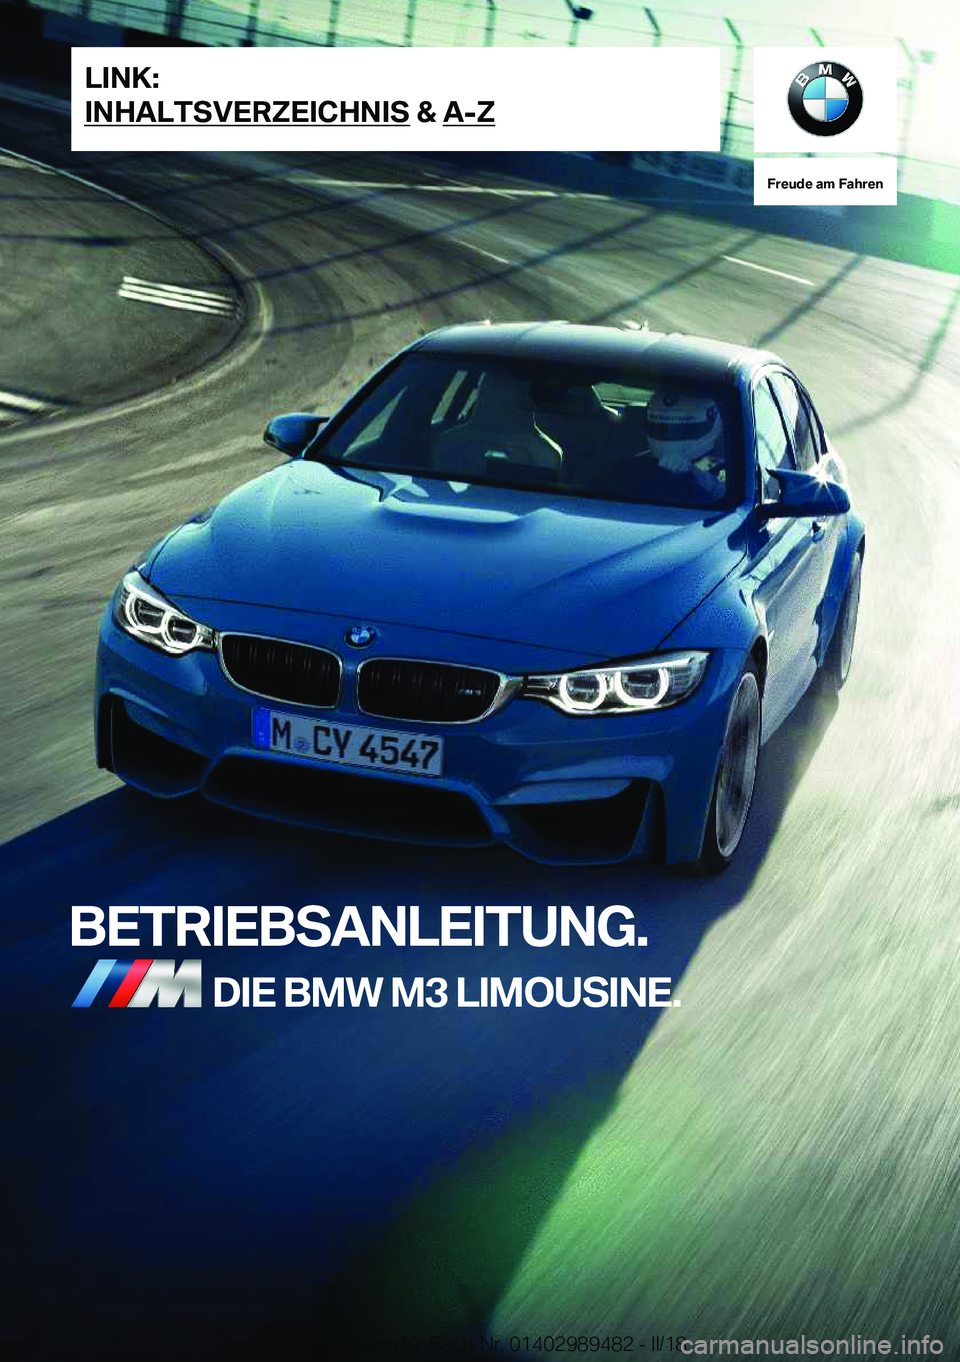 BMW M3 2018  Betriebsanleitungen (in German) �F�r�e�u�d�e��a�m��F�a�h�r�e�n
�B�E�T�R�I�E�B�S�A�N�L�E�I�T�U�N�G�.�D�I�E��B�M�W��M�3��L�I�M�O�U�S�I�N�E�.�L�I�N�K�:
�I�N�H�A�L�T�S�V�E�R�;�E�I�C�H�N�I�S��&��A�-�;�O�n�l�i�n�e� �V�e�r�s�i�o�n� 